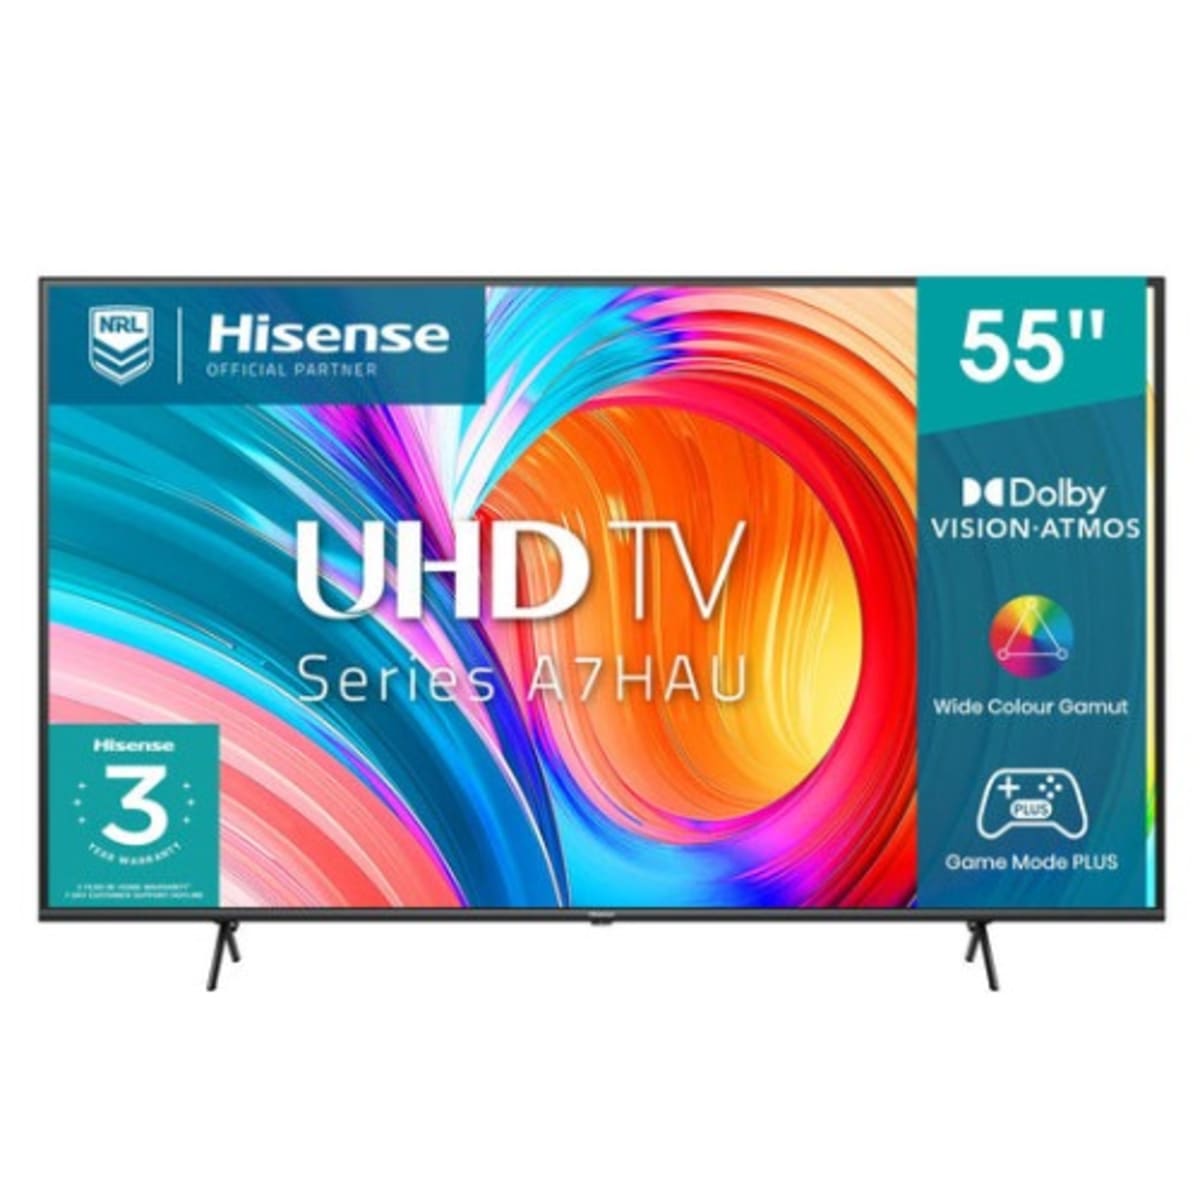 Hisense 55” Uhd 4k Smart Tv